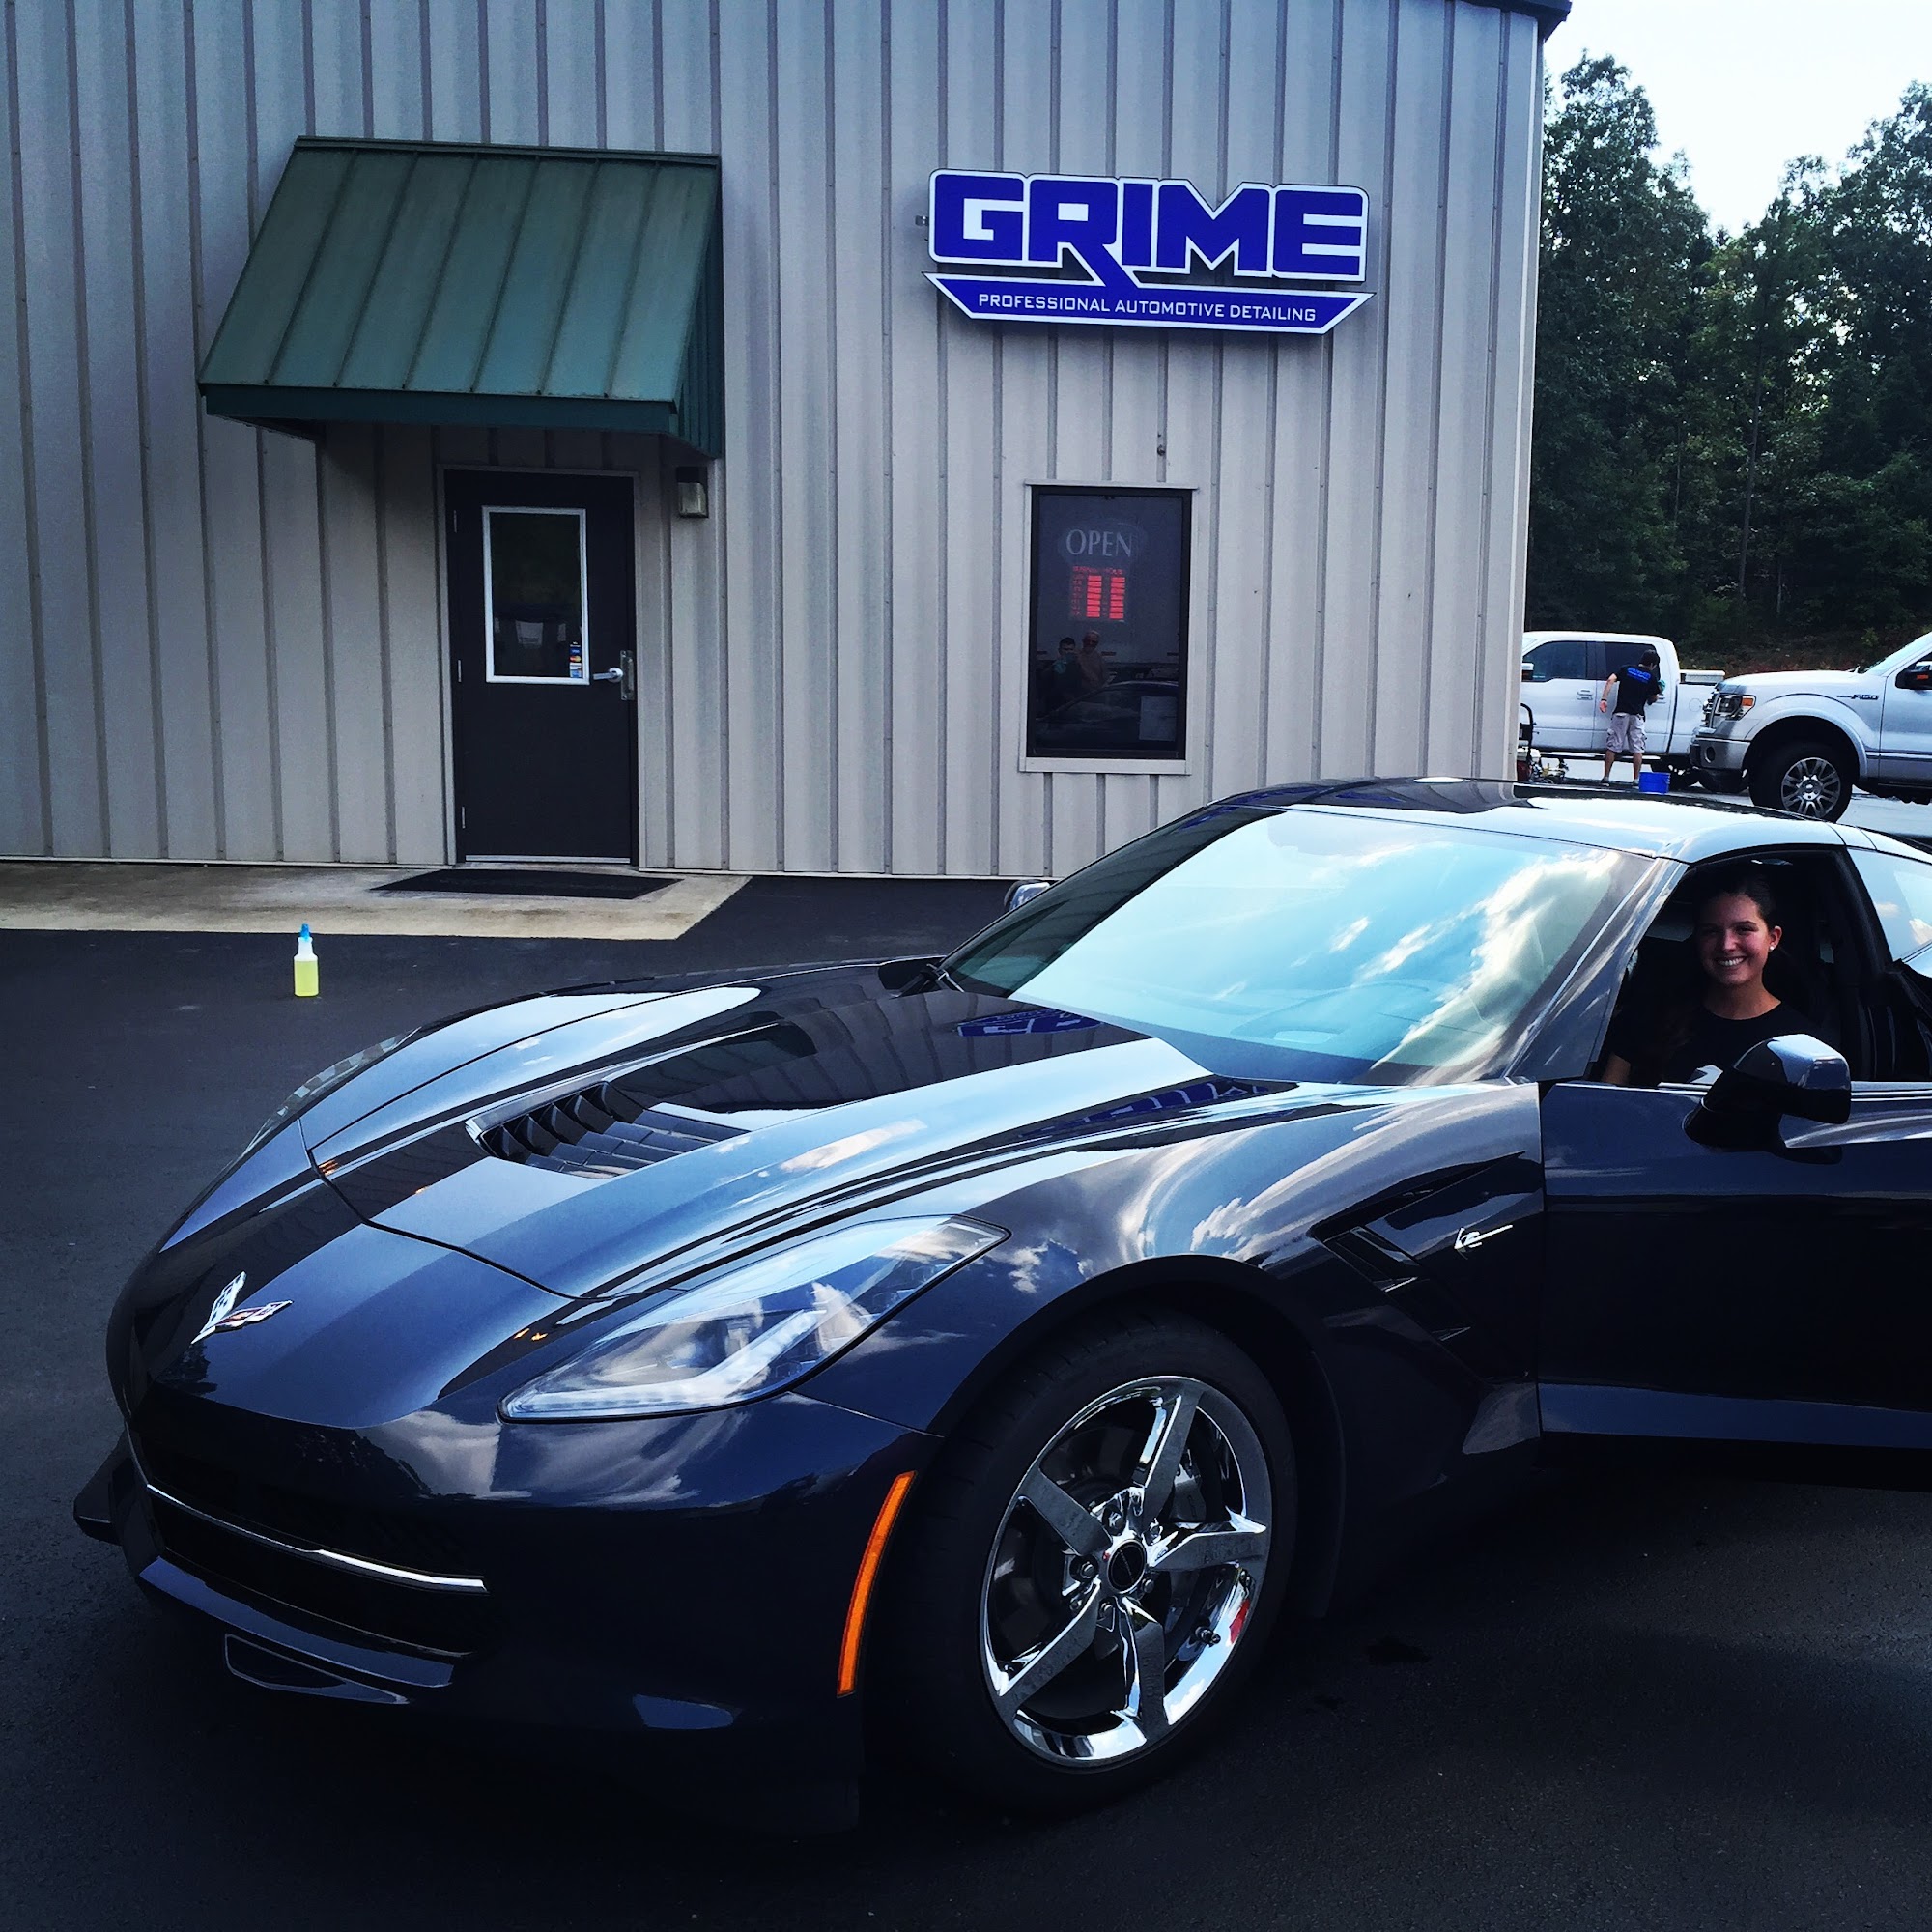 Grime: Professional Automotive Detailing